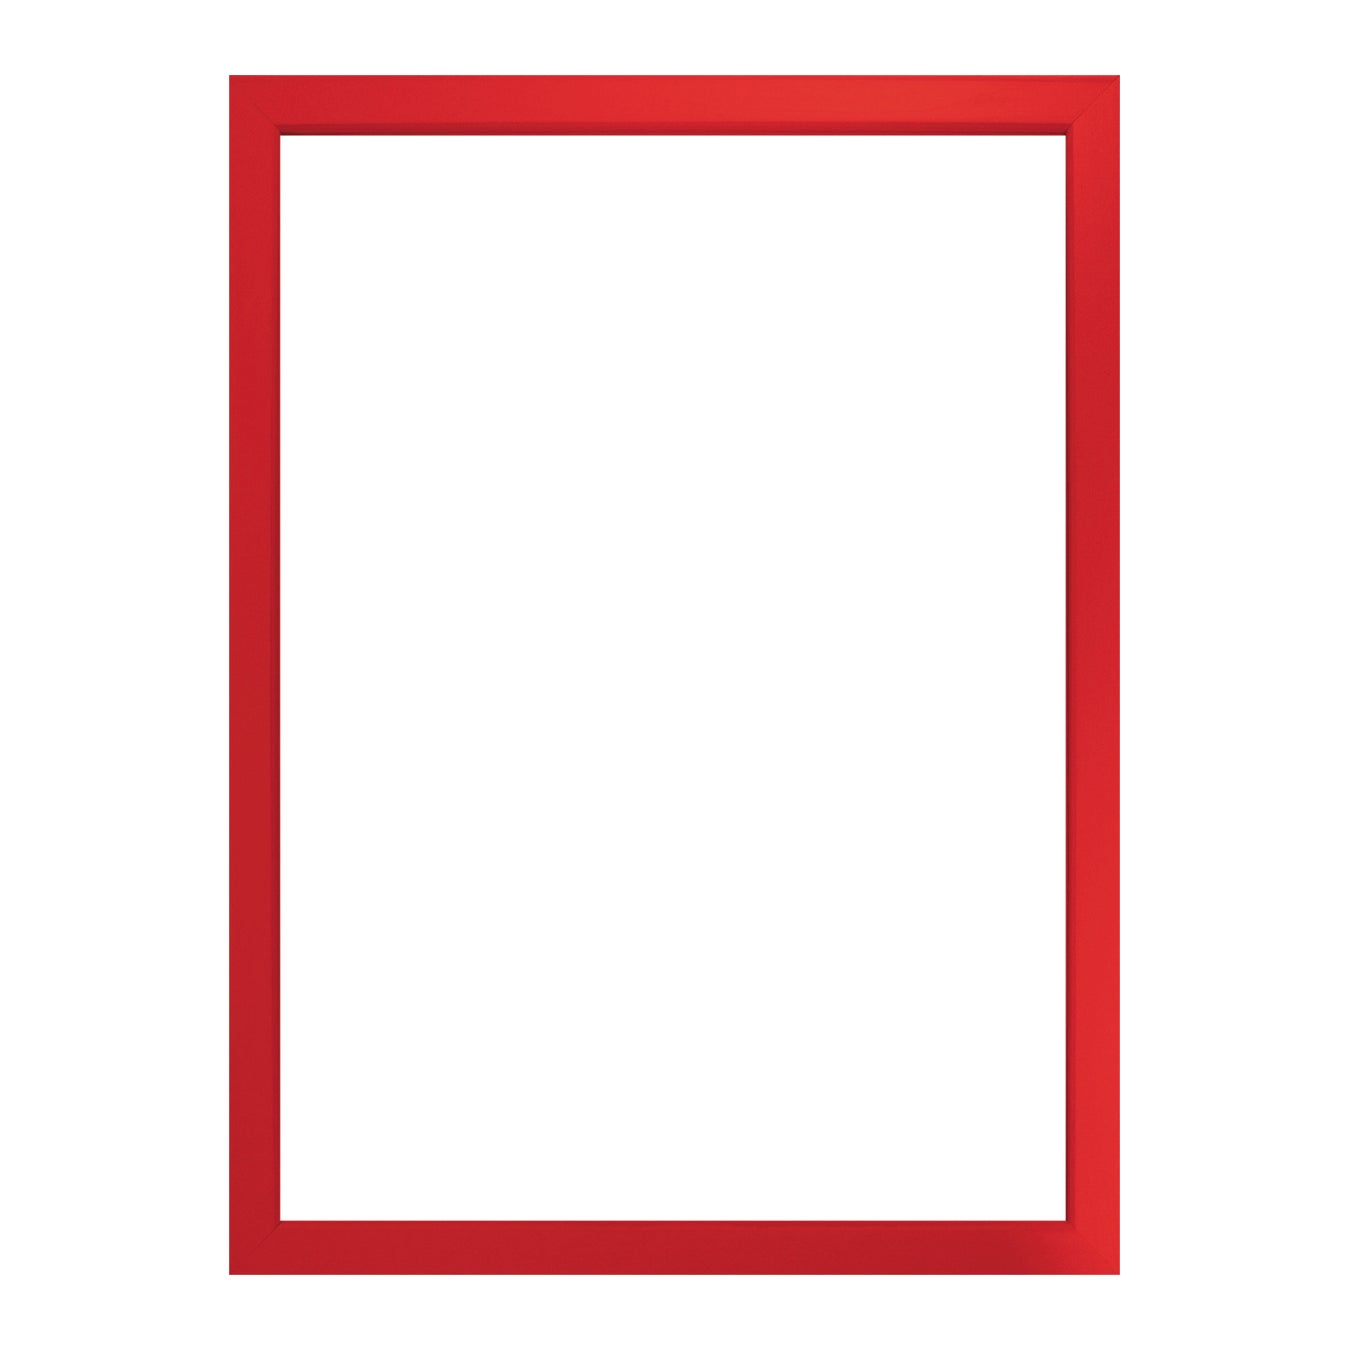 Wallazz Cornice PORTAFOTO in Legno da Parete Formato A4 Stile COLORATO Made in Italy Dimensione 21X29,7 CM Colore Rosso 